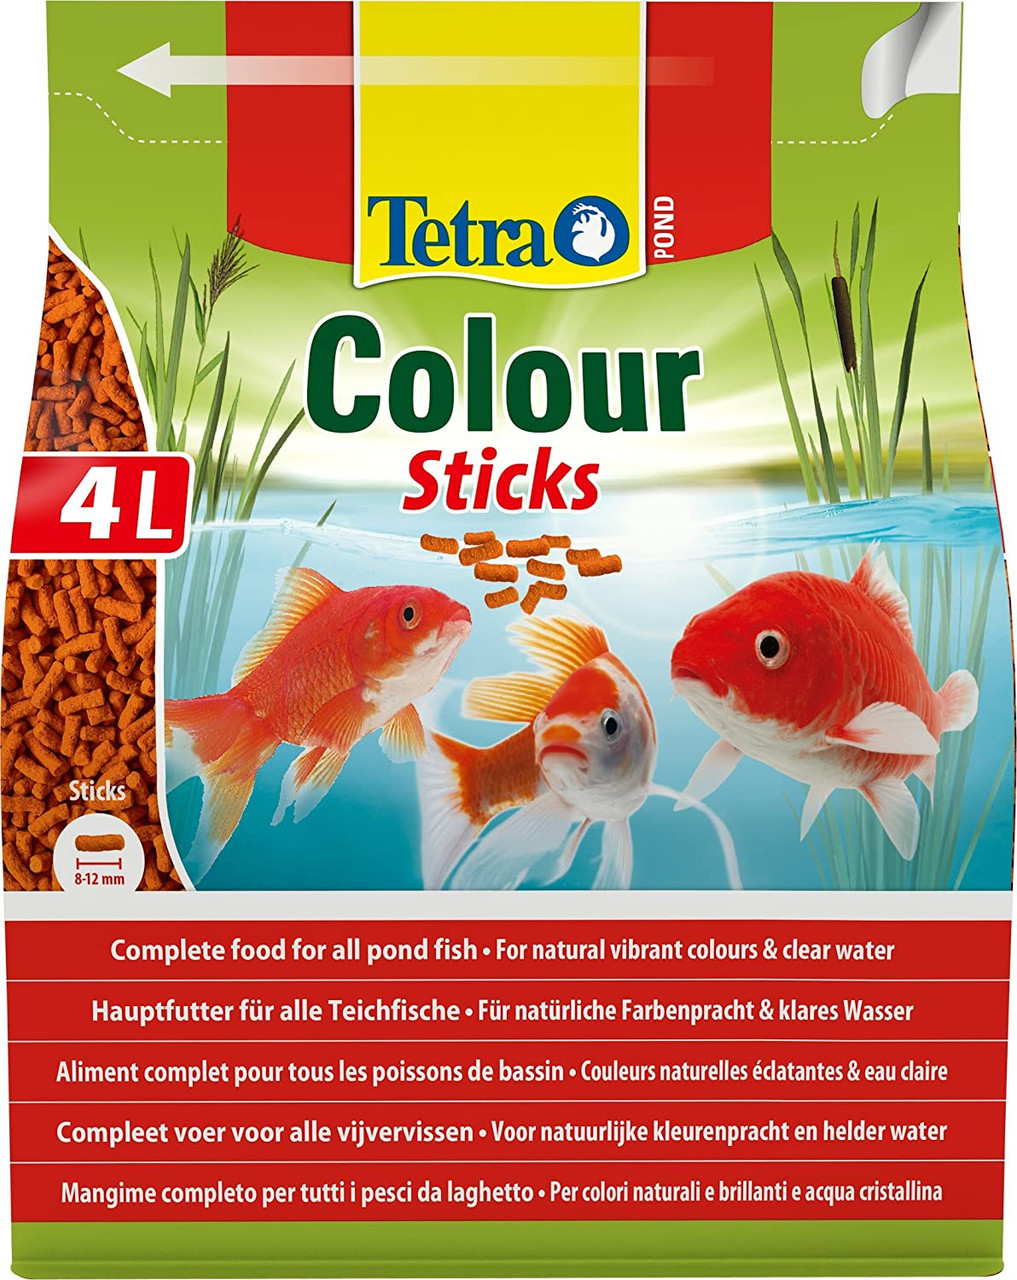 Tetra Pond Colour Sticks 750g 4L